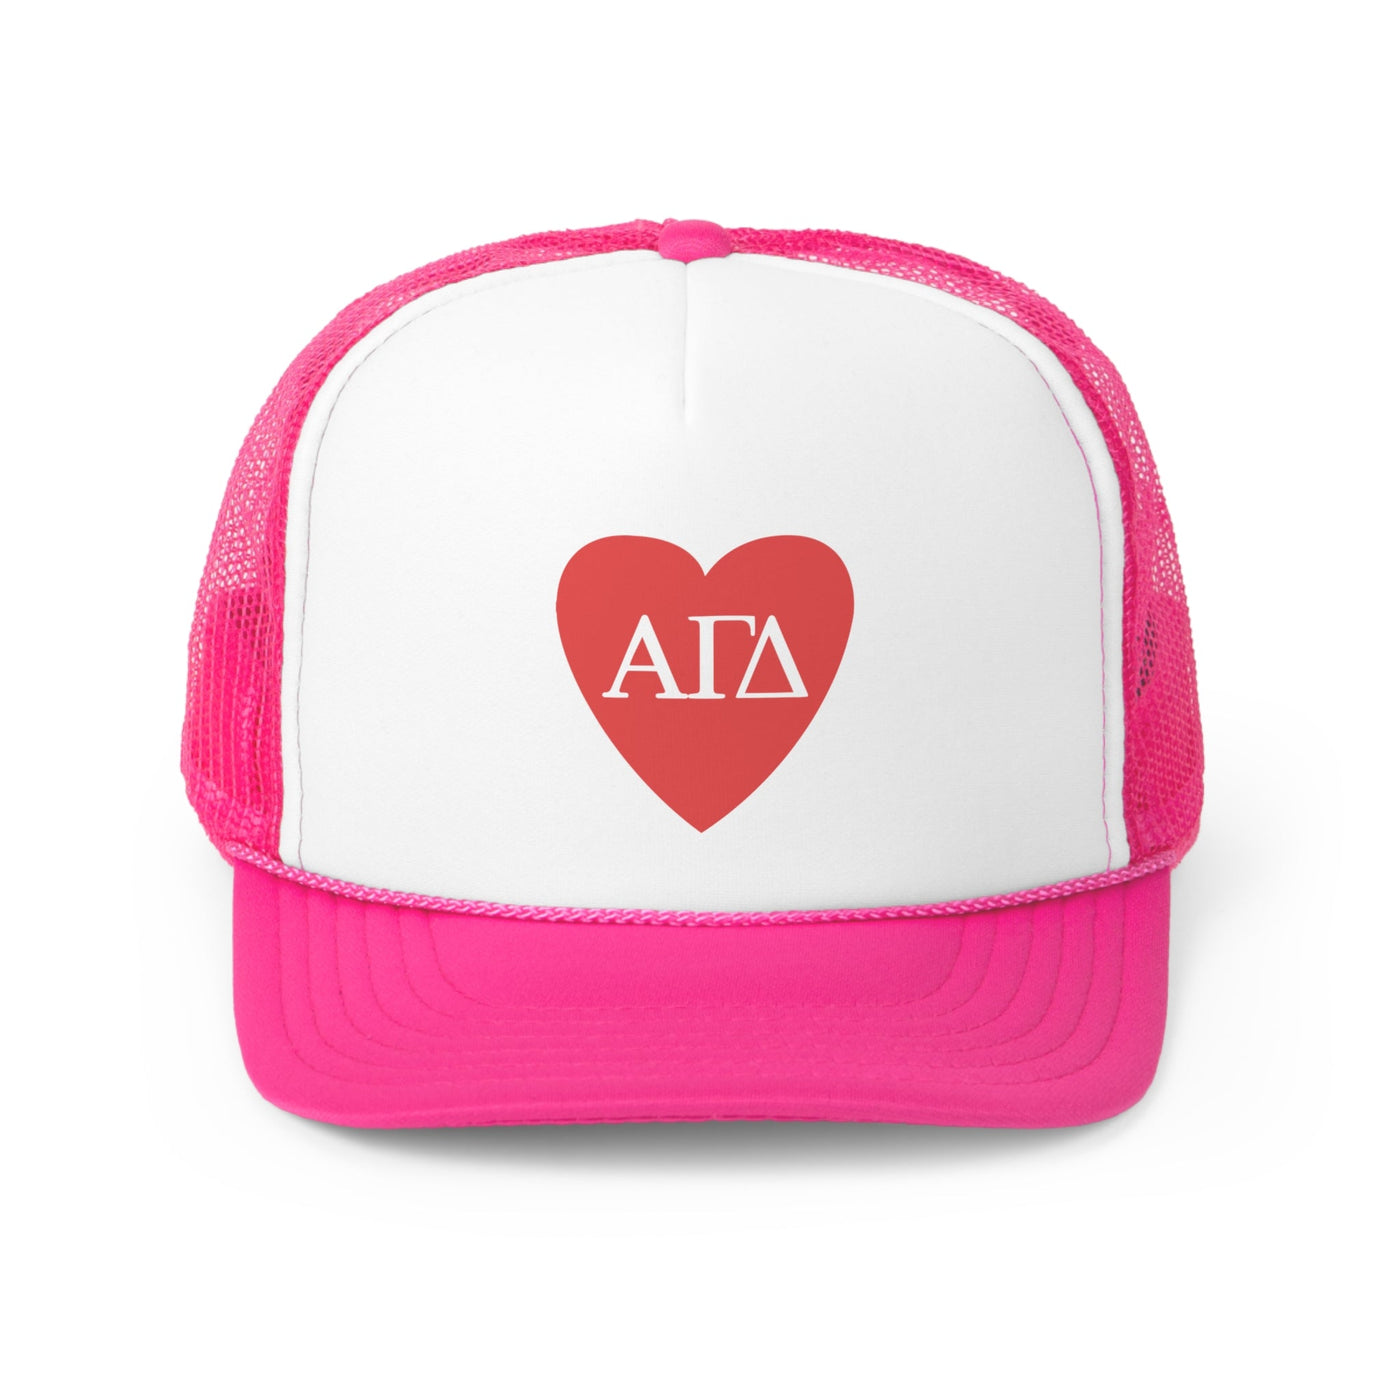 Alpha Gamma Delta Heart Letters Sorority Foam Trucker Hat